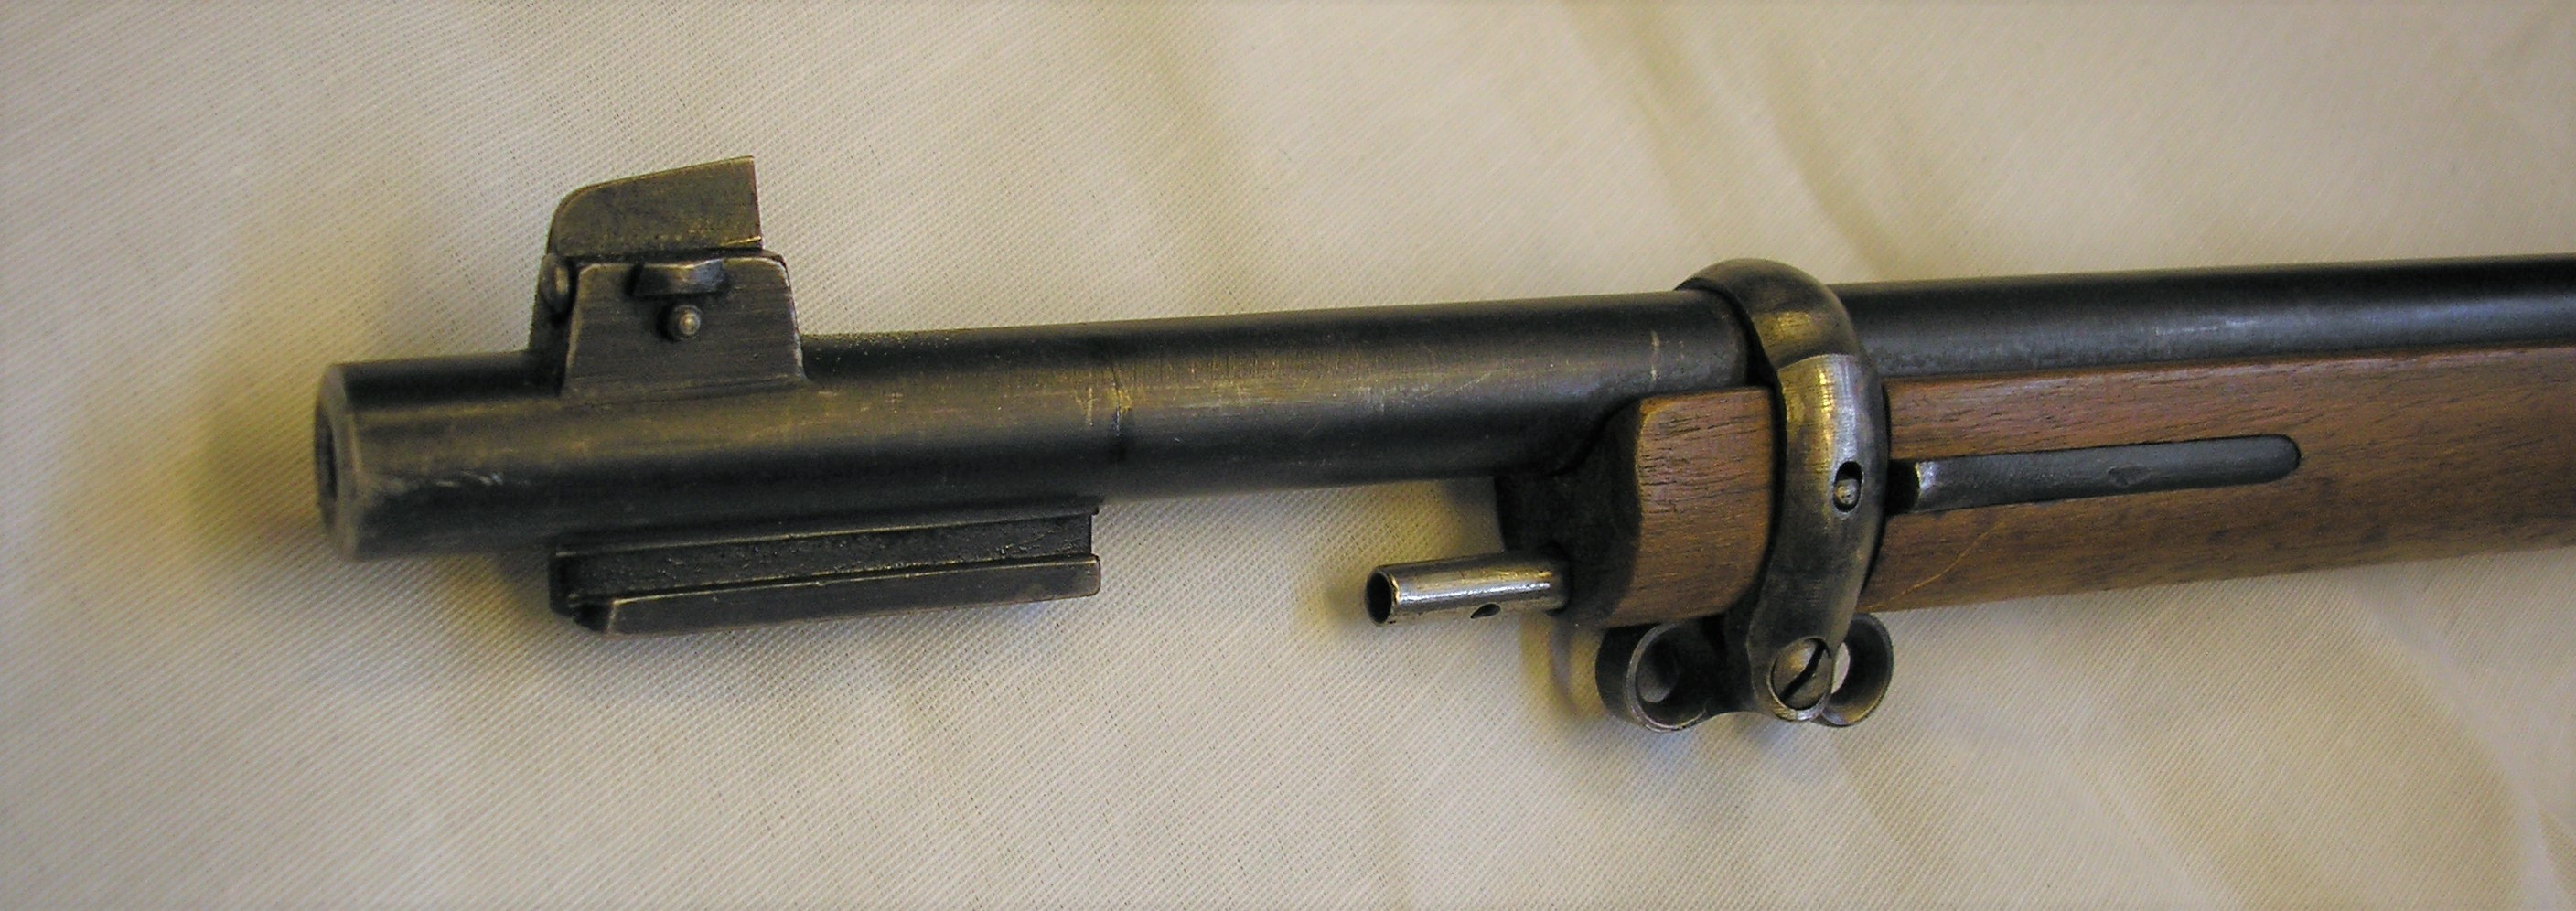 ./guns/rifle/bilder/Rifle-Kongsberg-Krag-M1894-1944-Nb090-10.JPG